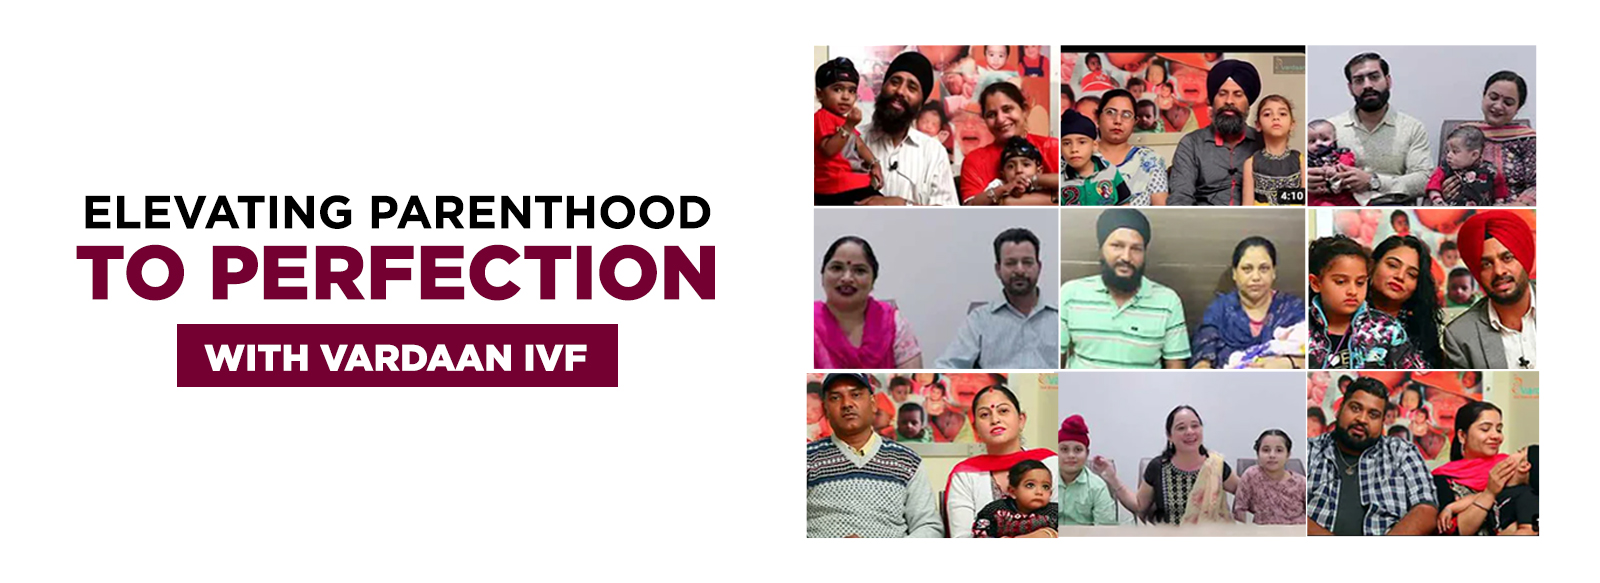 Vardaan IVF, IVF in jalandhar, IVF in Amritsar, IVF in Srinagar